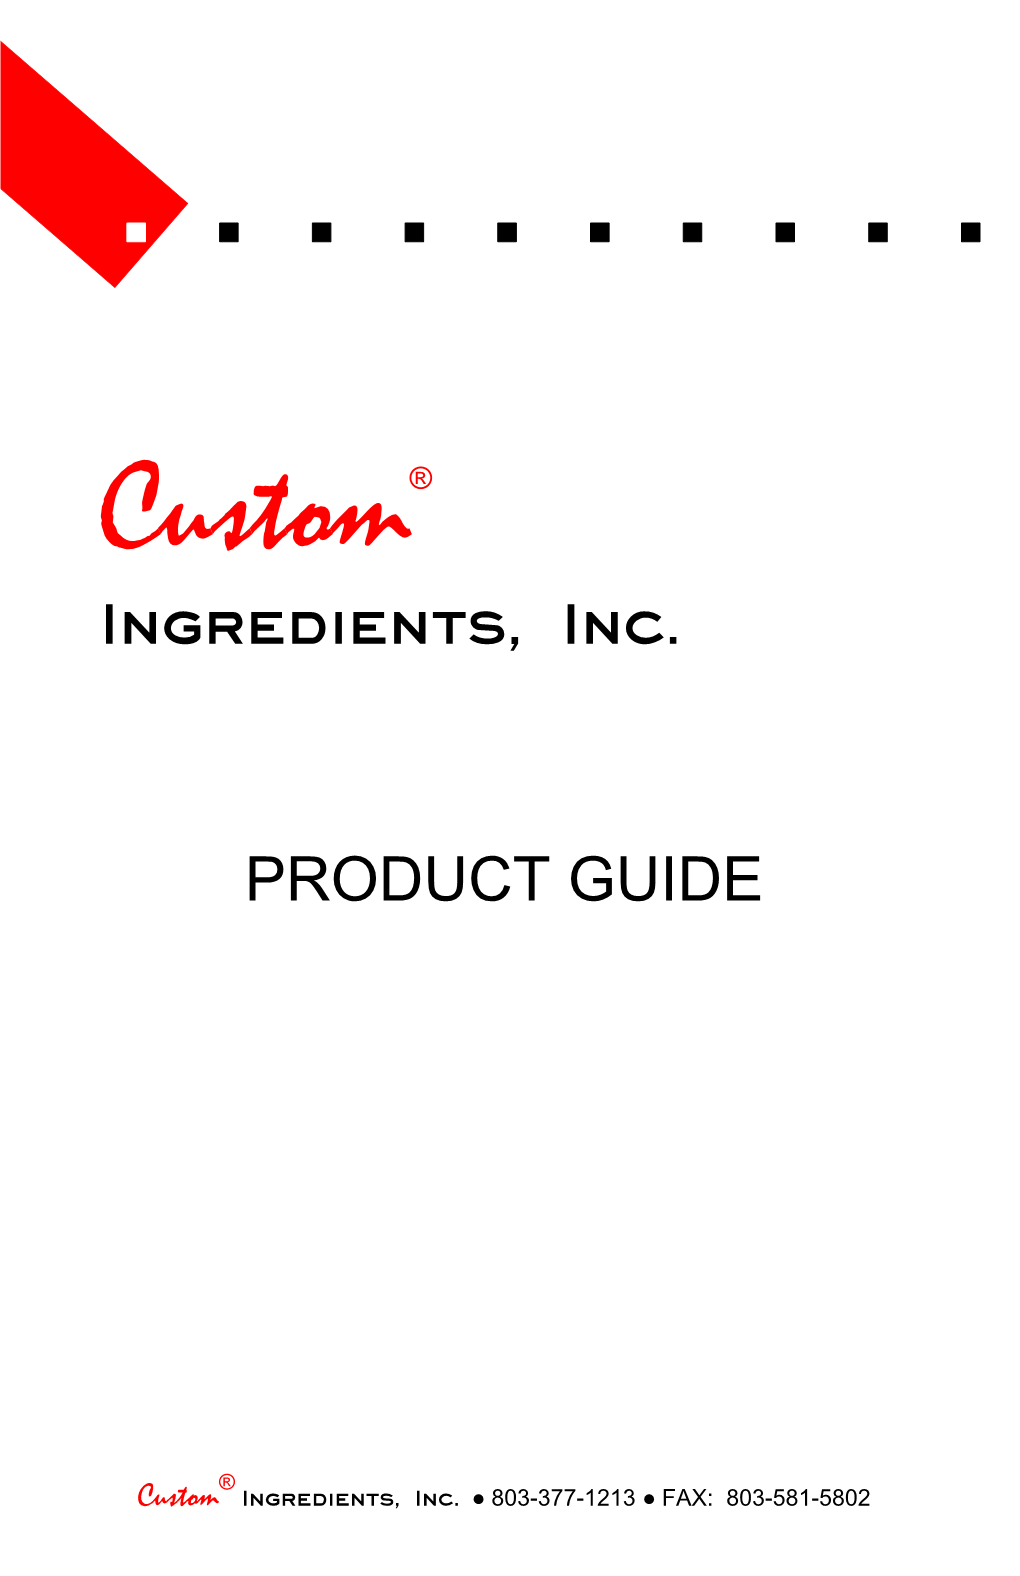 Ingredients, Inc